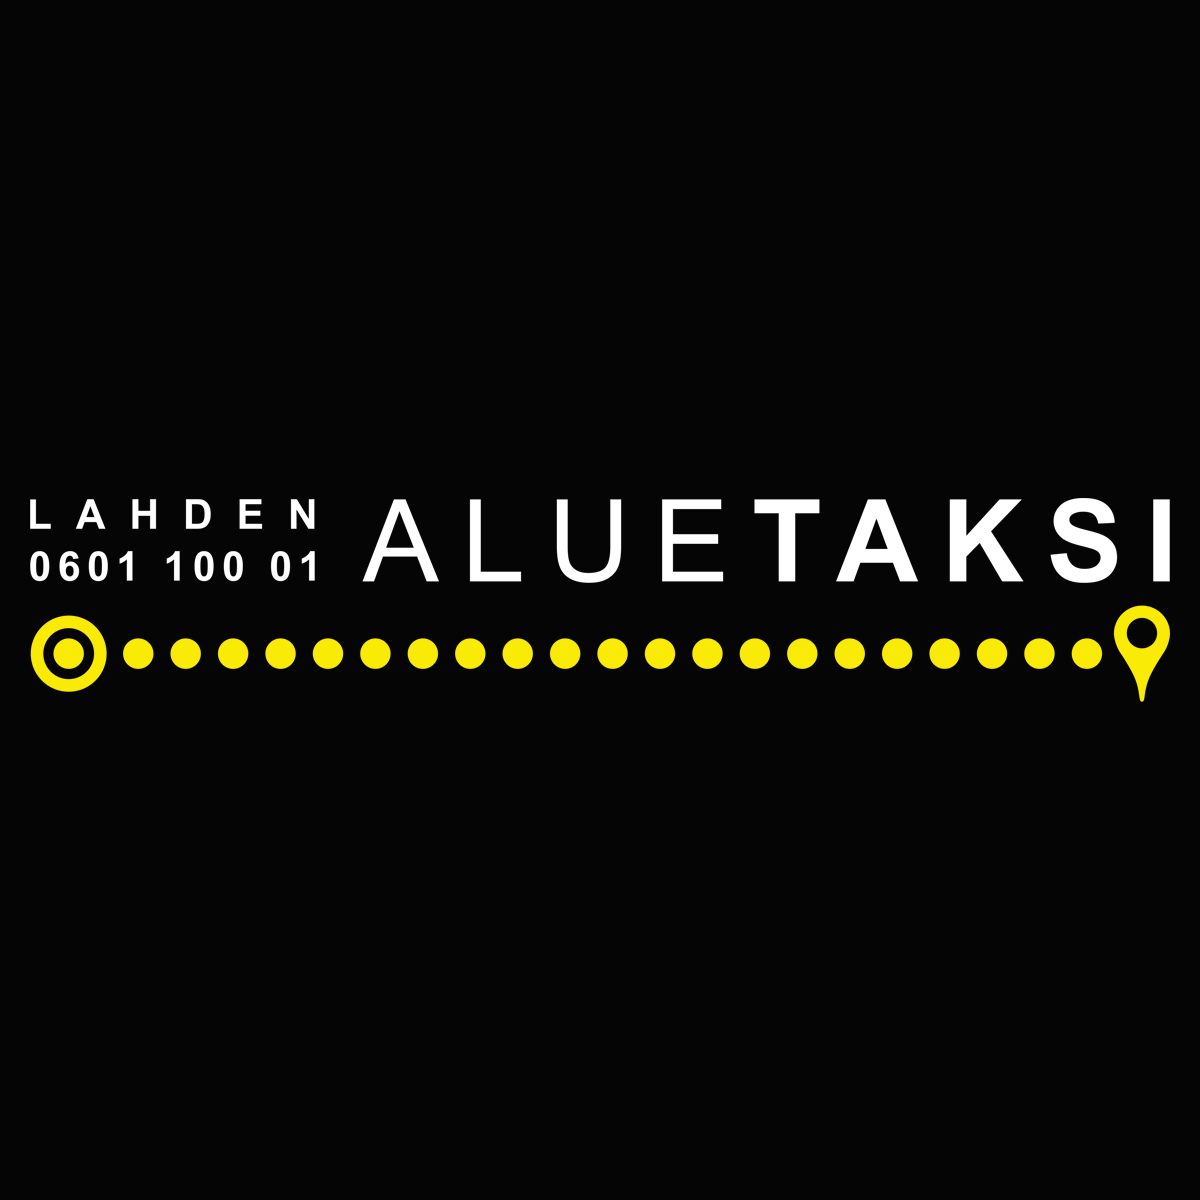 www.lahdenaluetaksi.fi